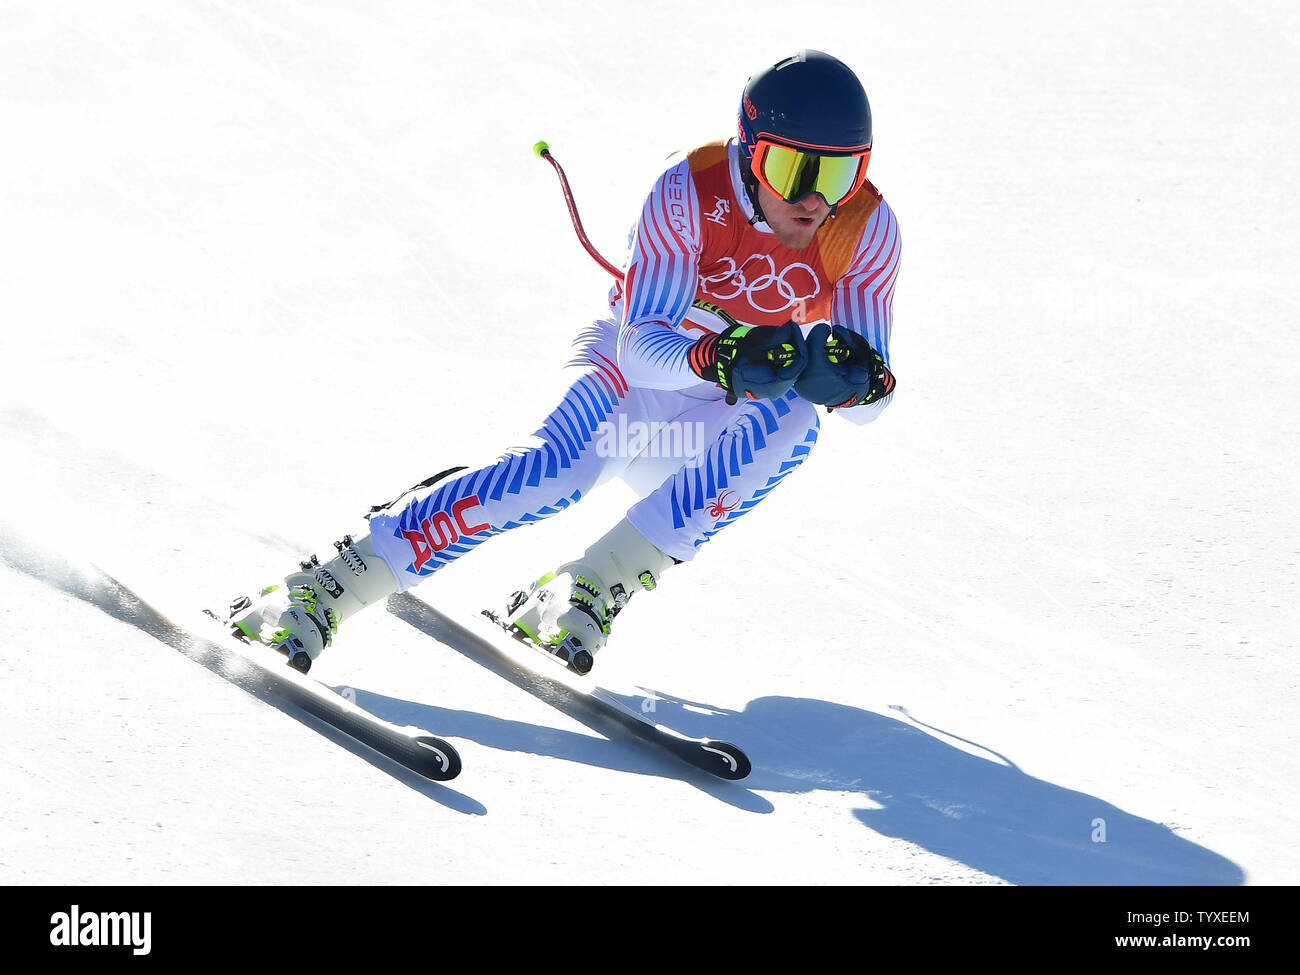 Ted Ligety américain est en concurrence dans la descente du combiné alpin masculin au cours de l'hiver 2018 de Pyeongchang Jo à Pyeongchang, Corée du Sud, le 13 février 2018. Photo par Kevin Dietsch/UPI Banque D'Images